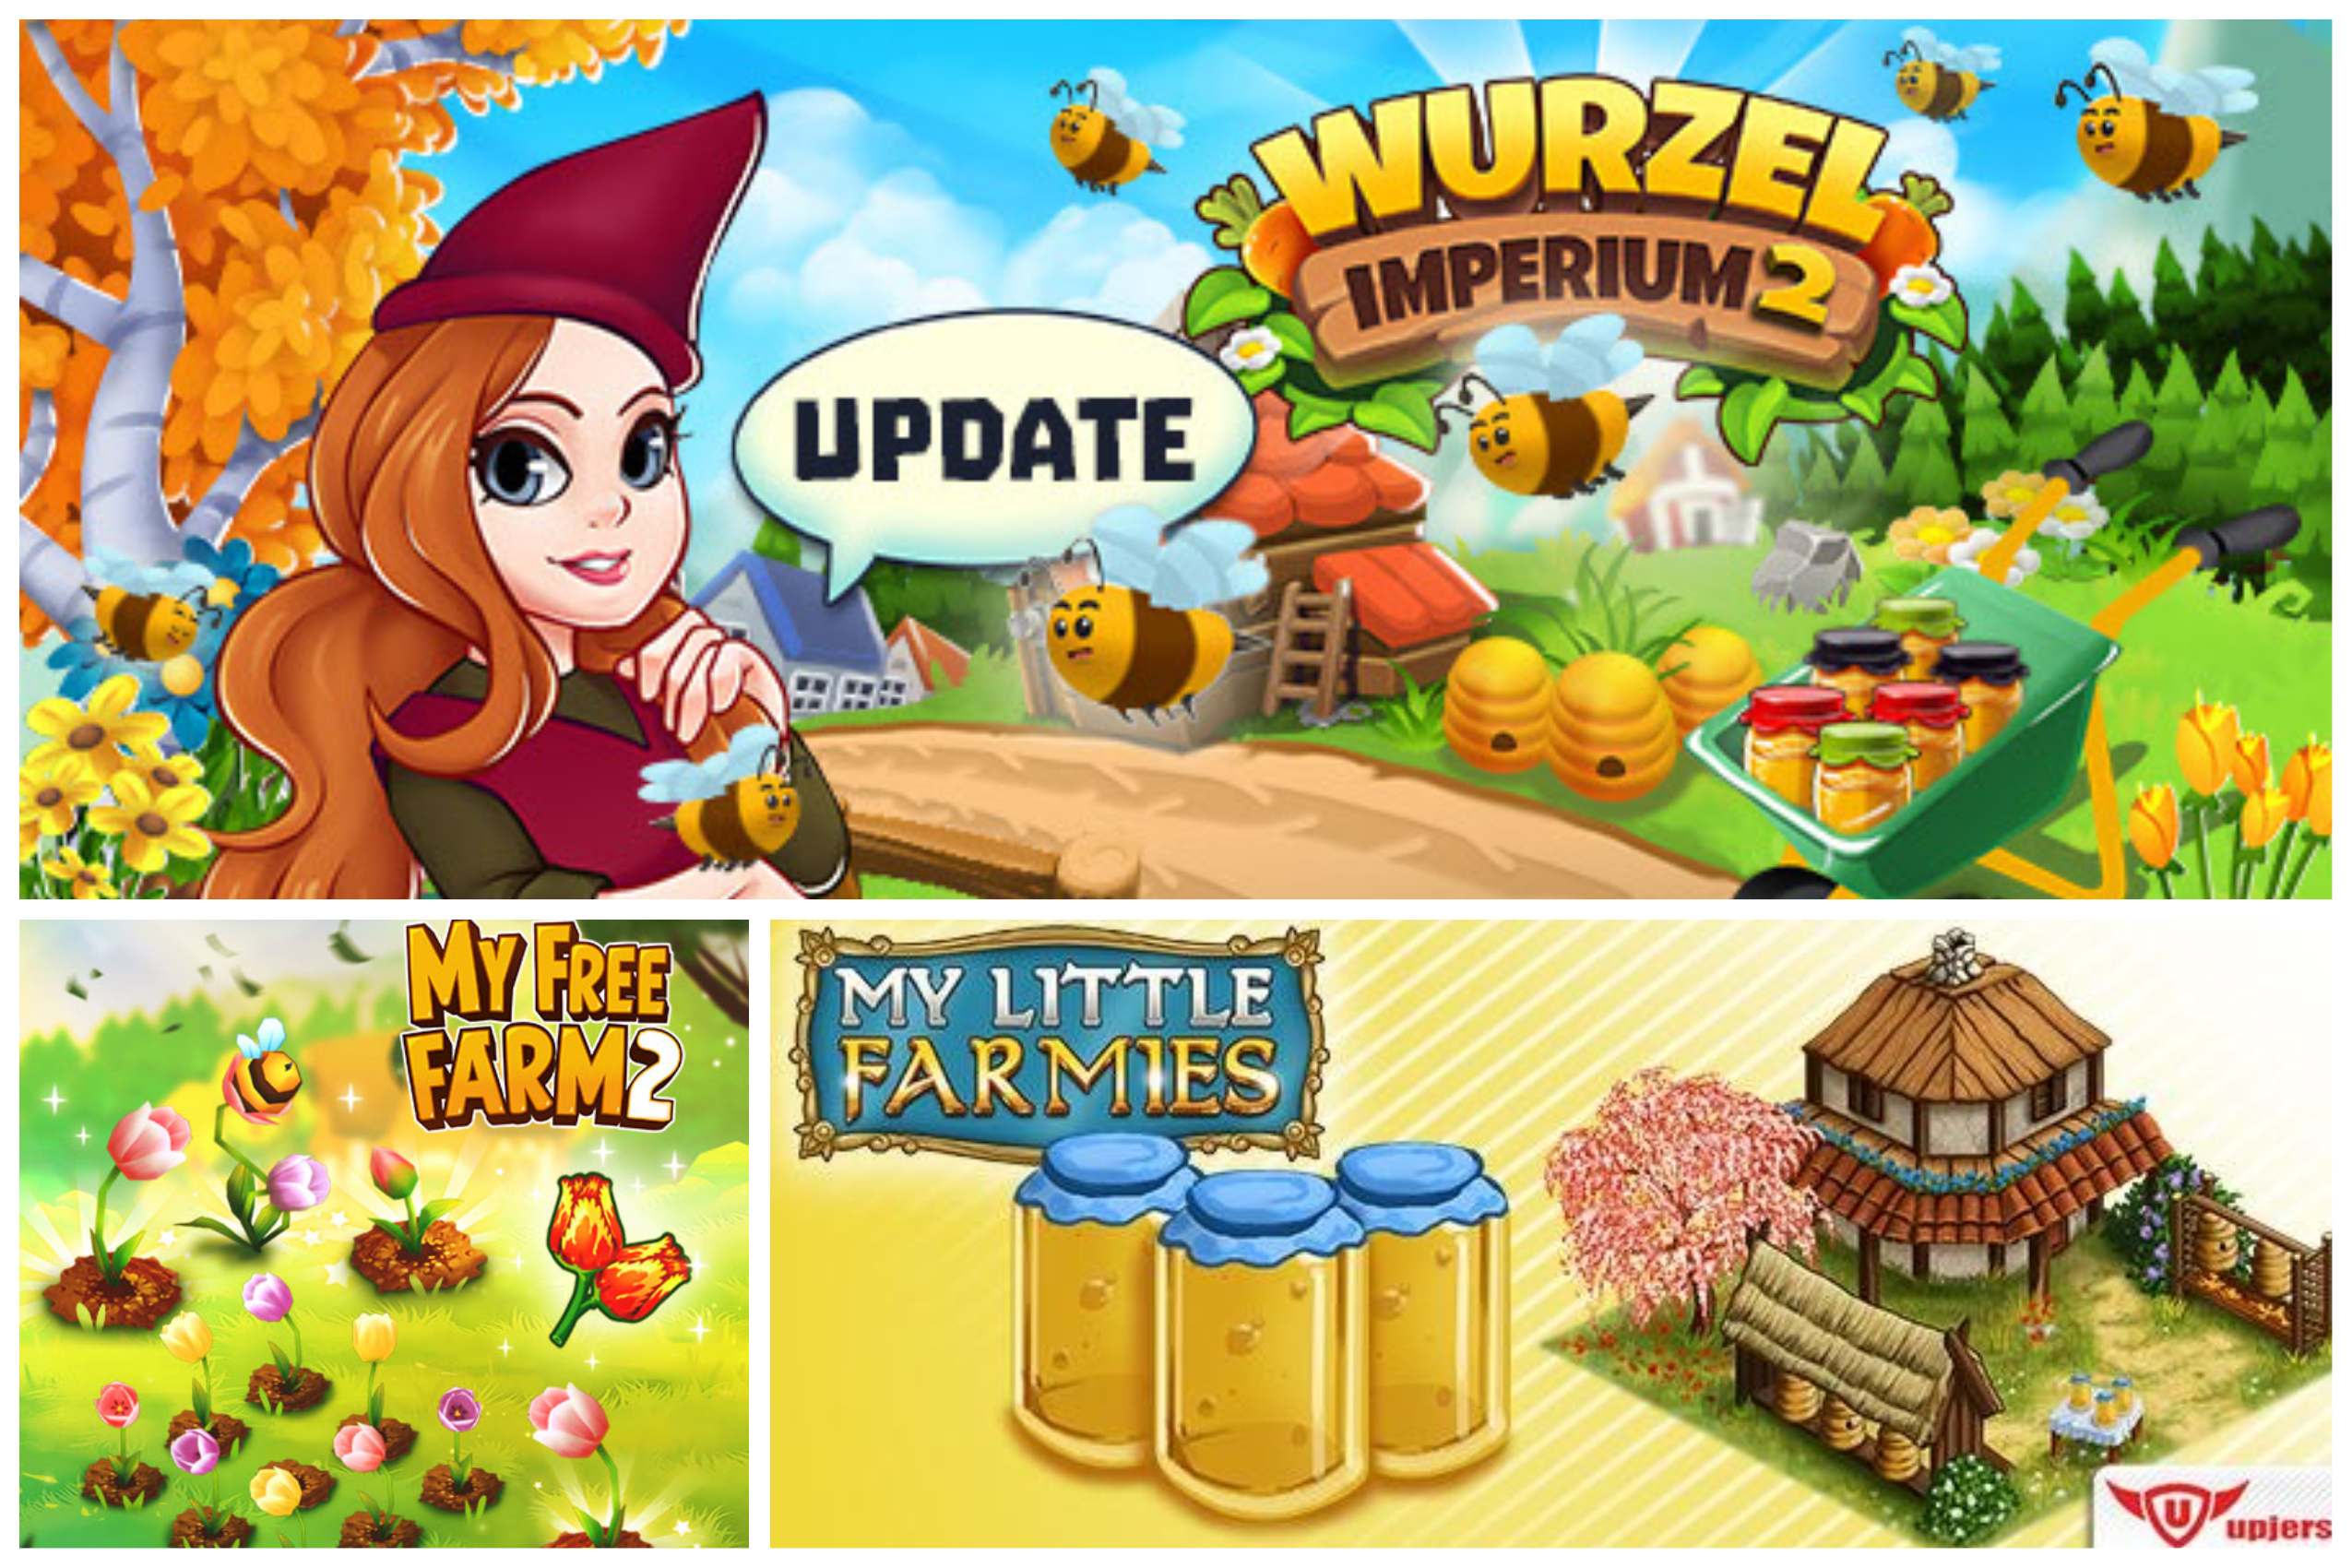 Wurzelimperium 2 mit dem Bienen-Feature, My Free Farm 2 mit der Tulpenhummel und die Imkerei in My Little Farmies - die perfekten Game Contents zum Weltbienentag.